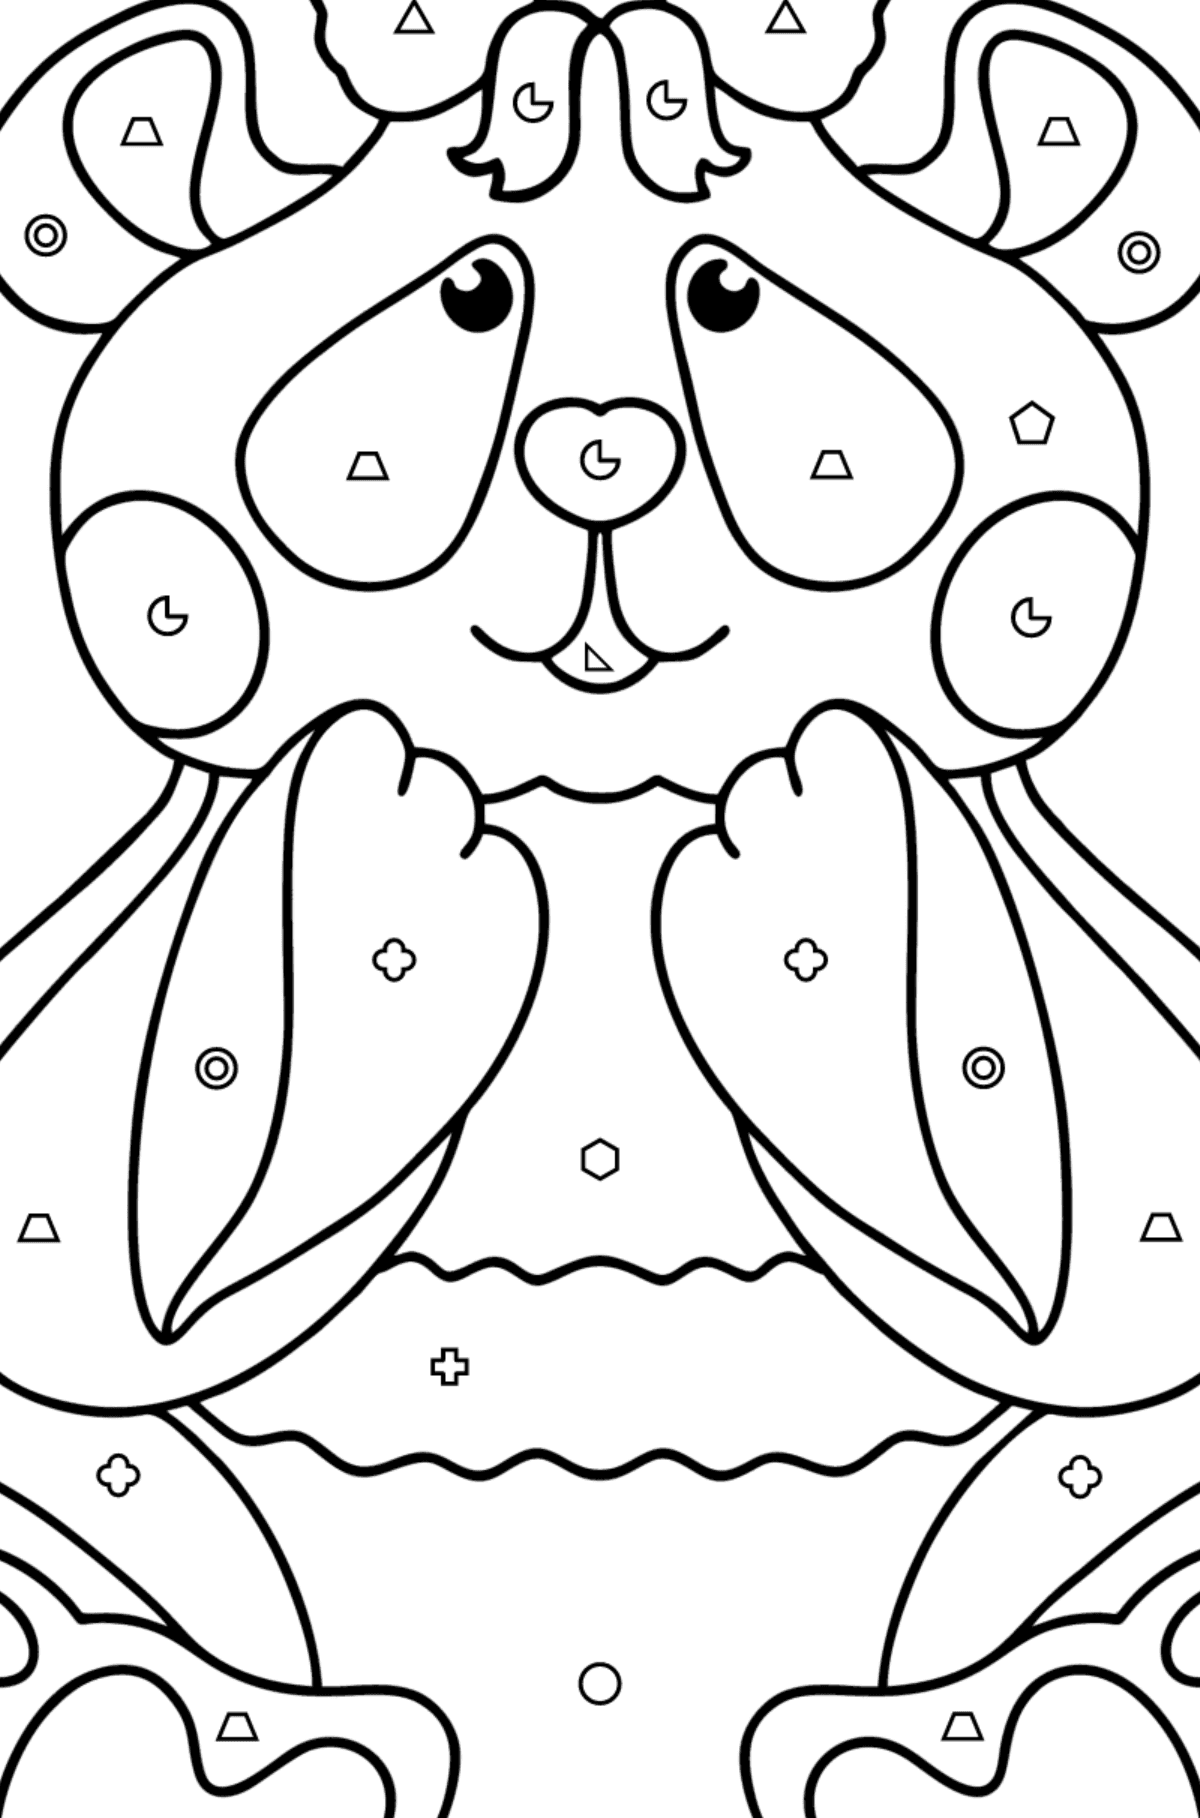 Boyama sayfası bebek panda - Geometrik Şekillerle Boyama çocuklar için